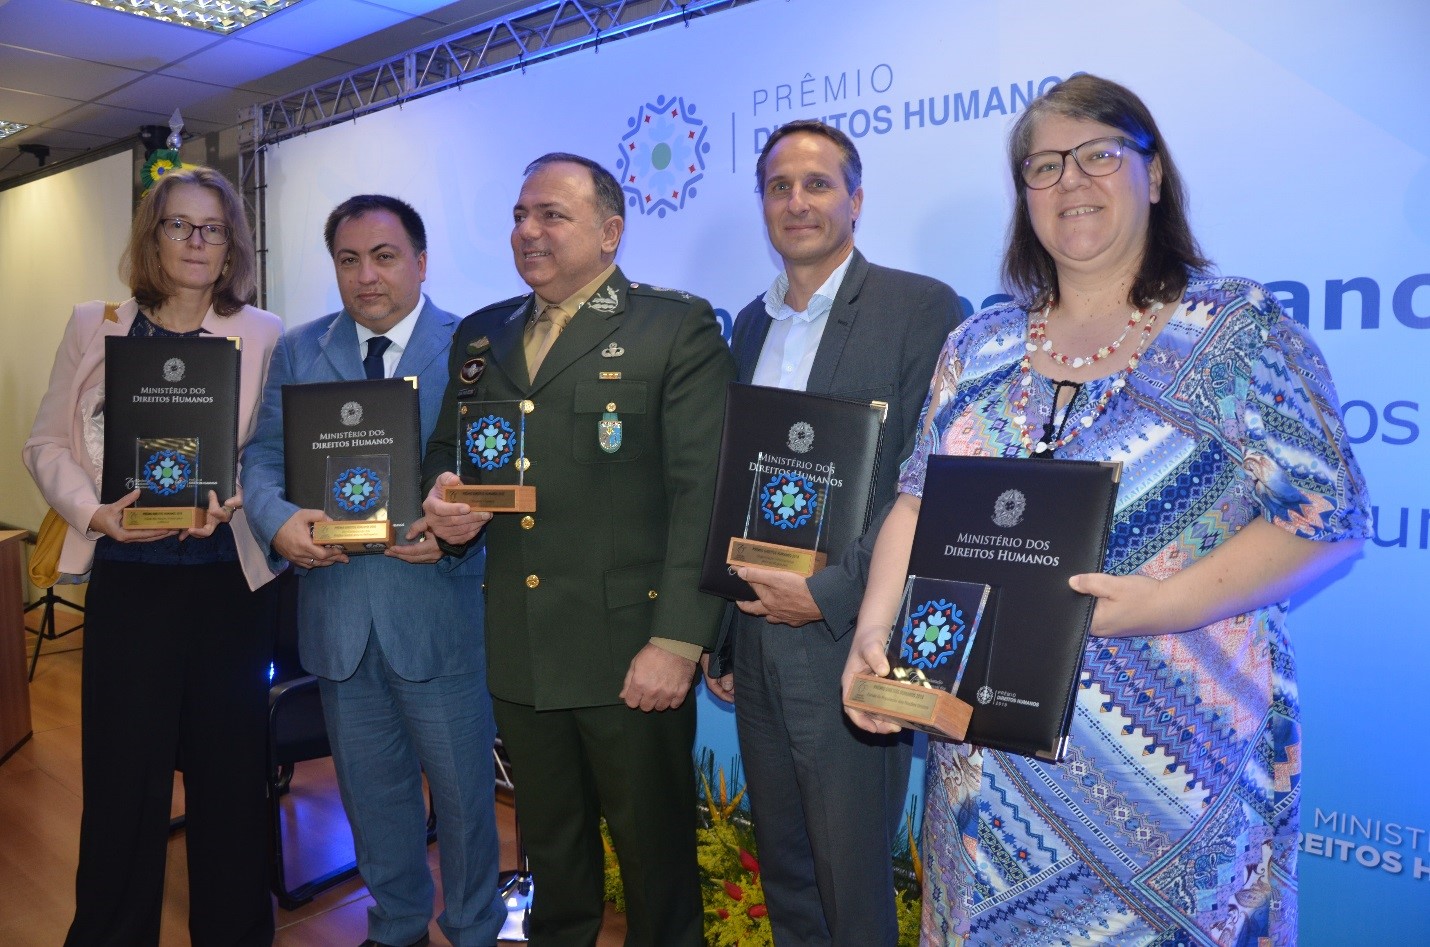 Agências da ONU e Exército Brasileiro recebem prêmio de direitos humanos por resposta humanitária à situação venezuelana